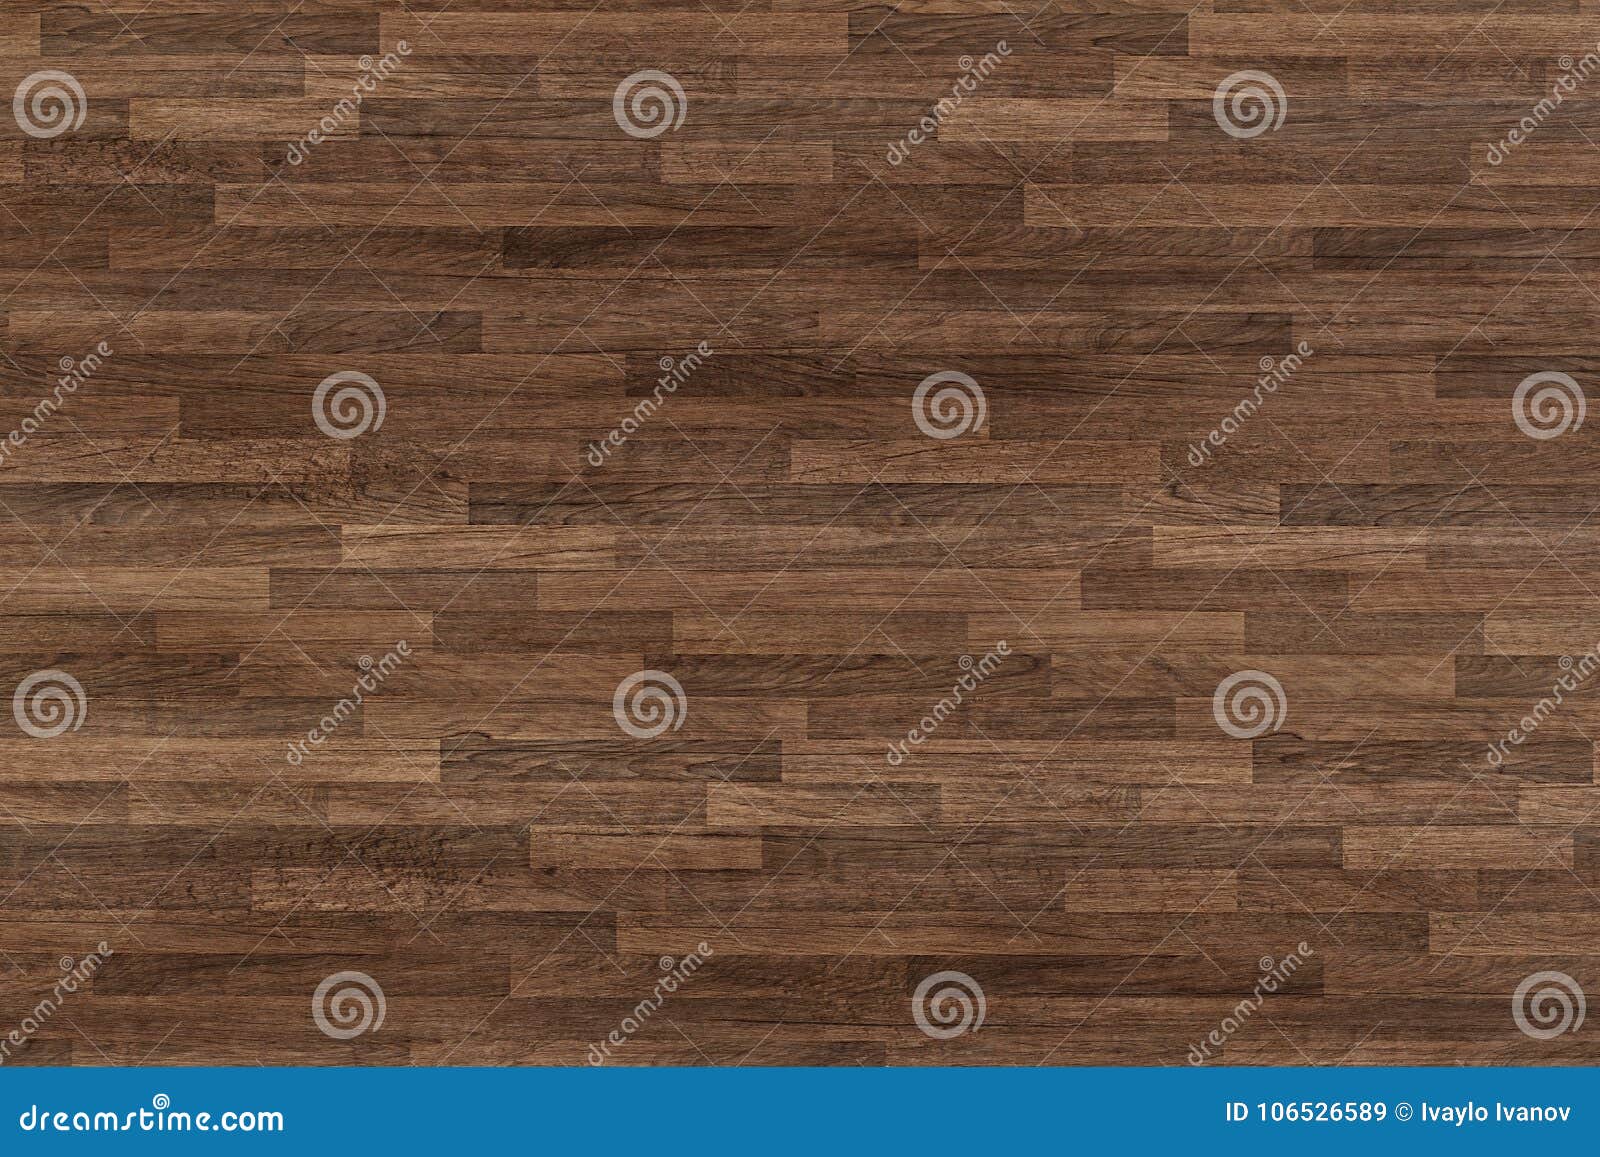 seamless wood floor texture, hardwood floor texture, wooden parquet.